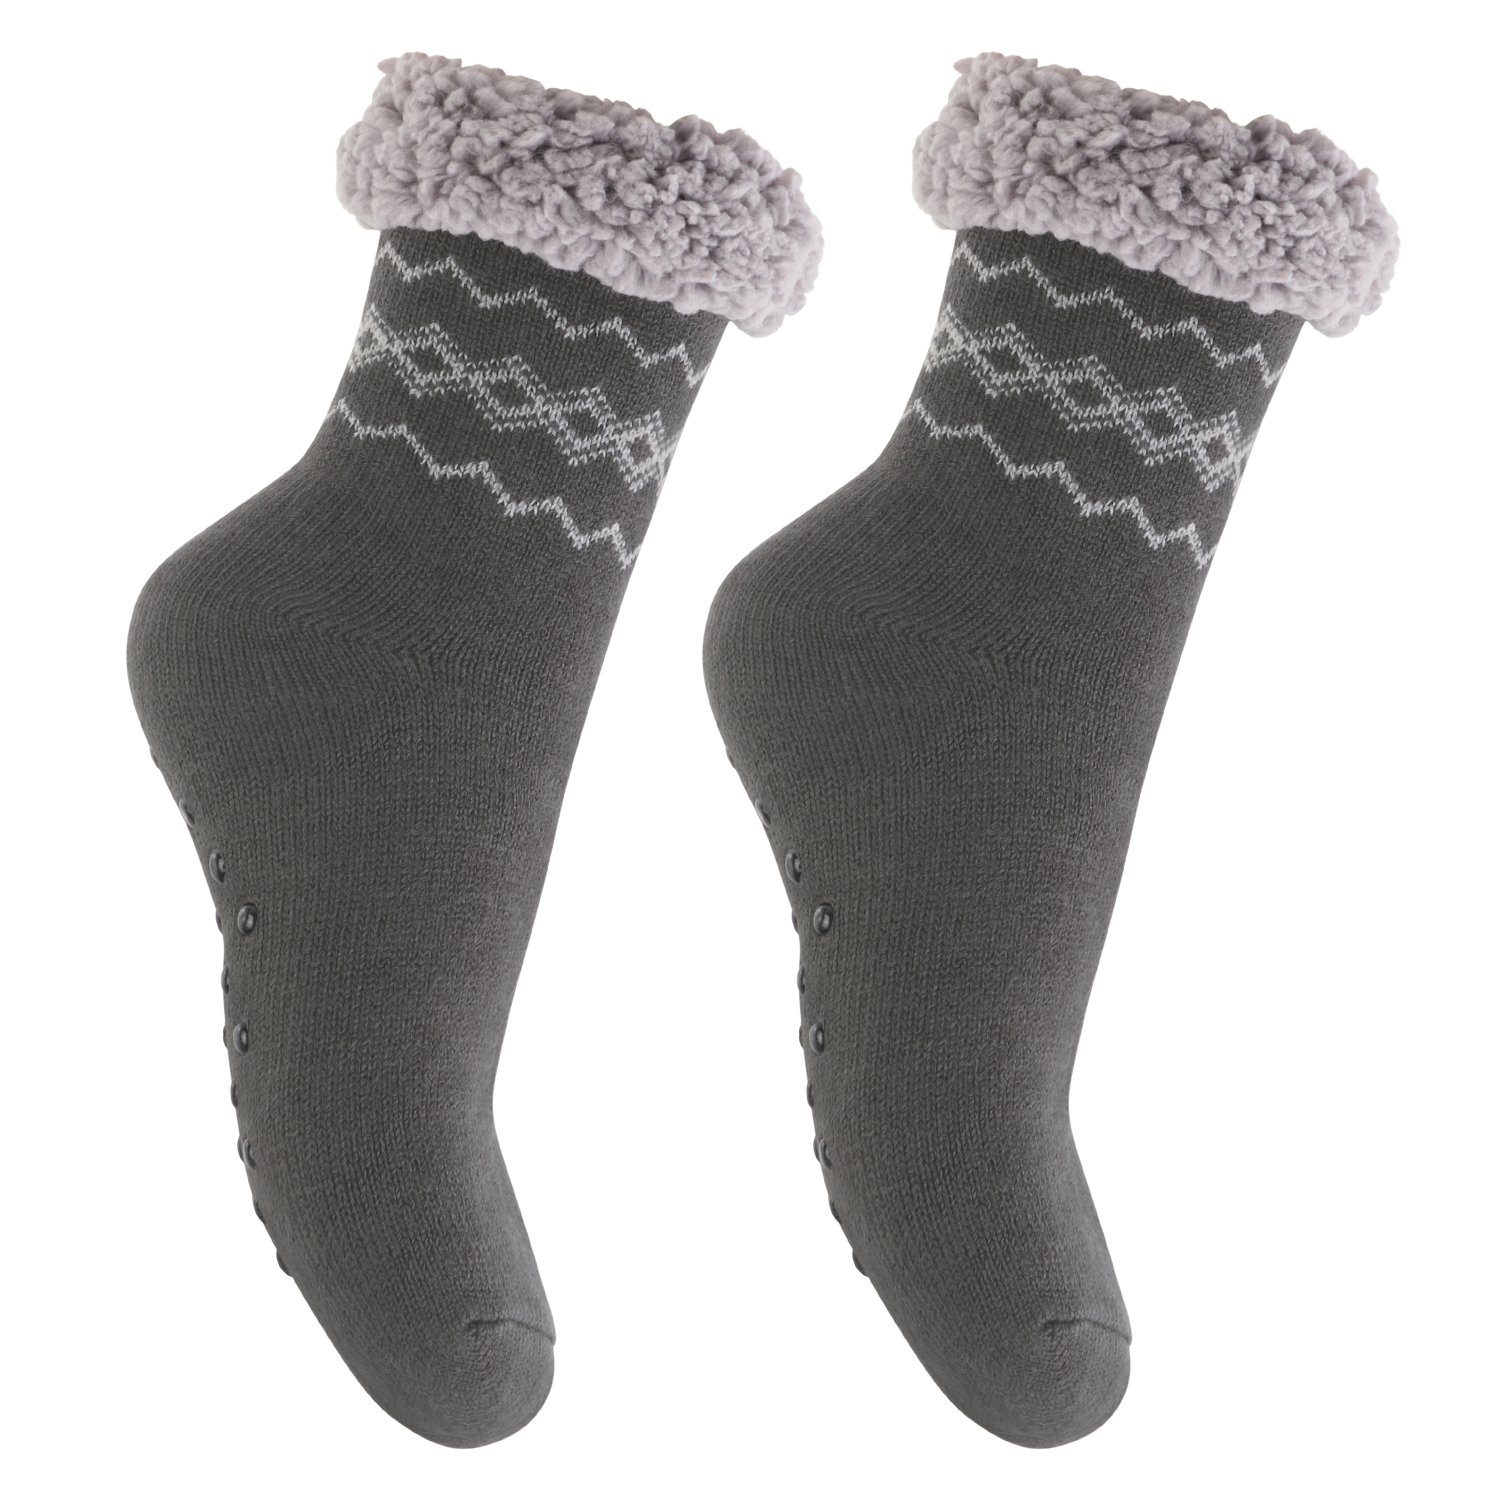 Footstar ABS-Socken Winter Haussocken für Damen & Herren (1/2 Paar) Kuschelsocken 2x Anthrazit